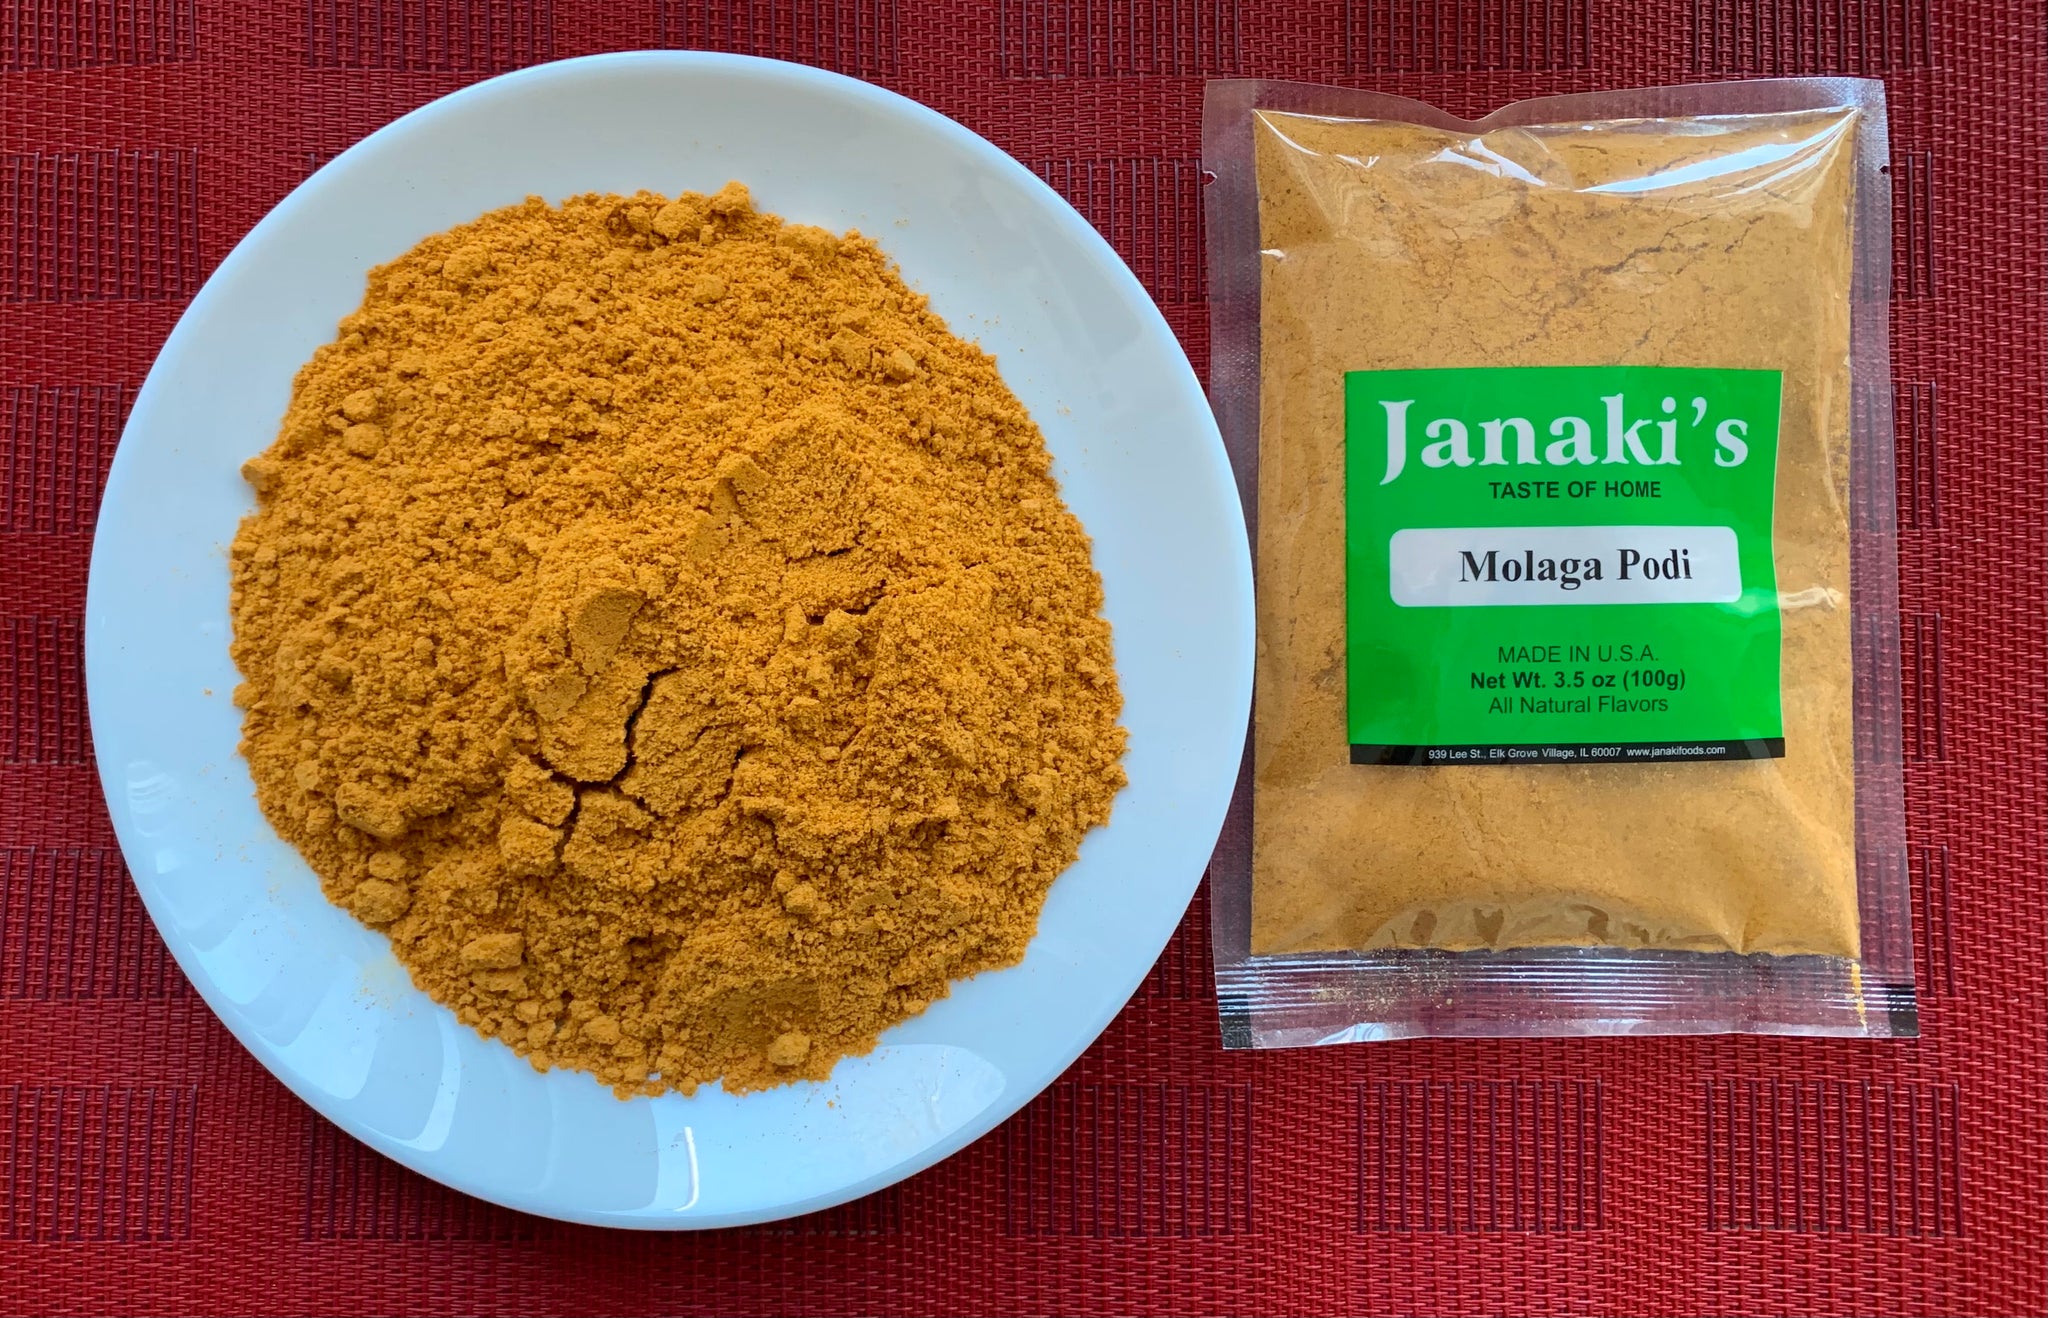 Molaga Podi (Spiced lentils powder)